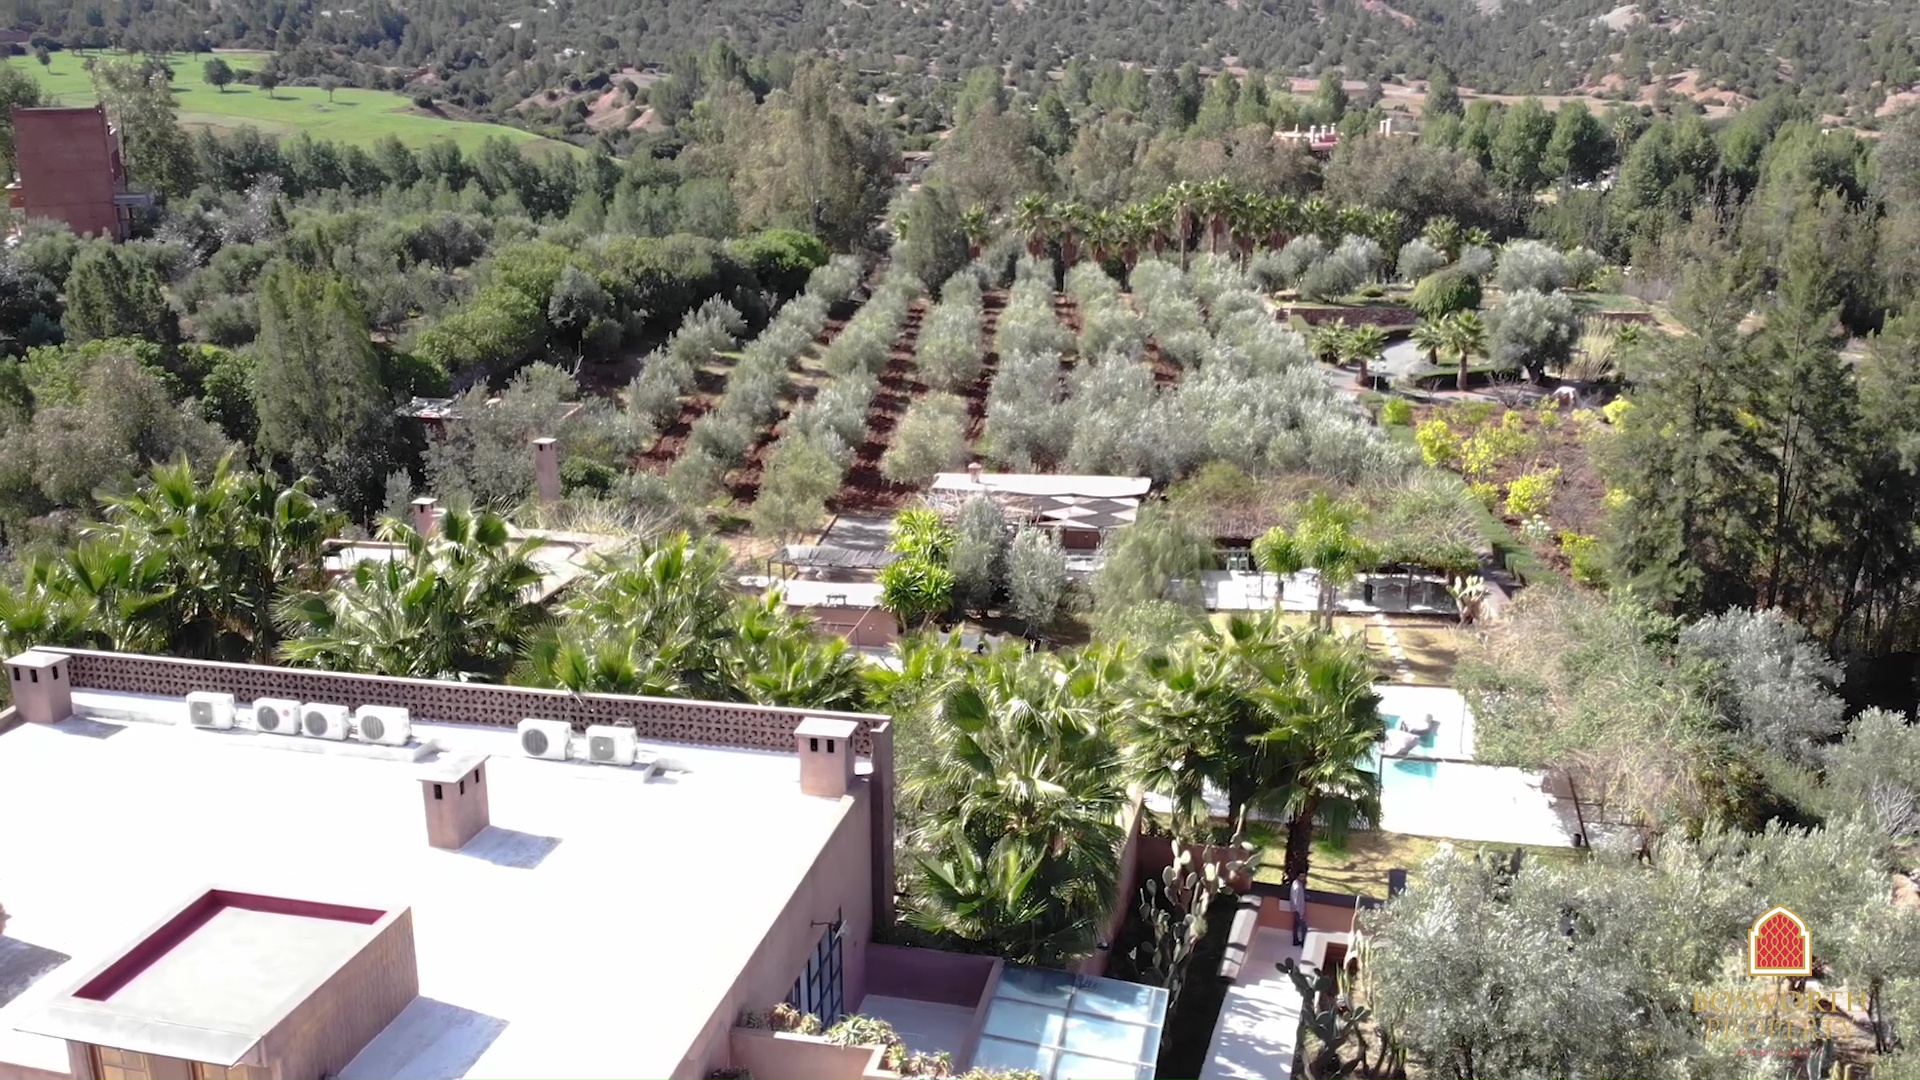 Eco Resort de lujo en venta Marrakech Montañas del Atlas - Propiedad de lujo Marrakech - Villa en venta Marrakech - Inmobiliaria Marrakech - Immobilier Marrakech